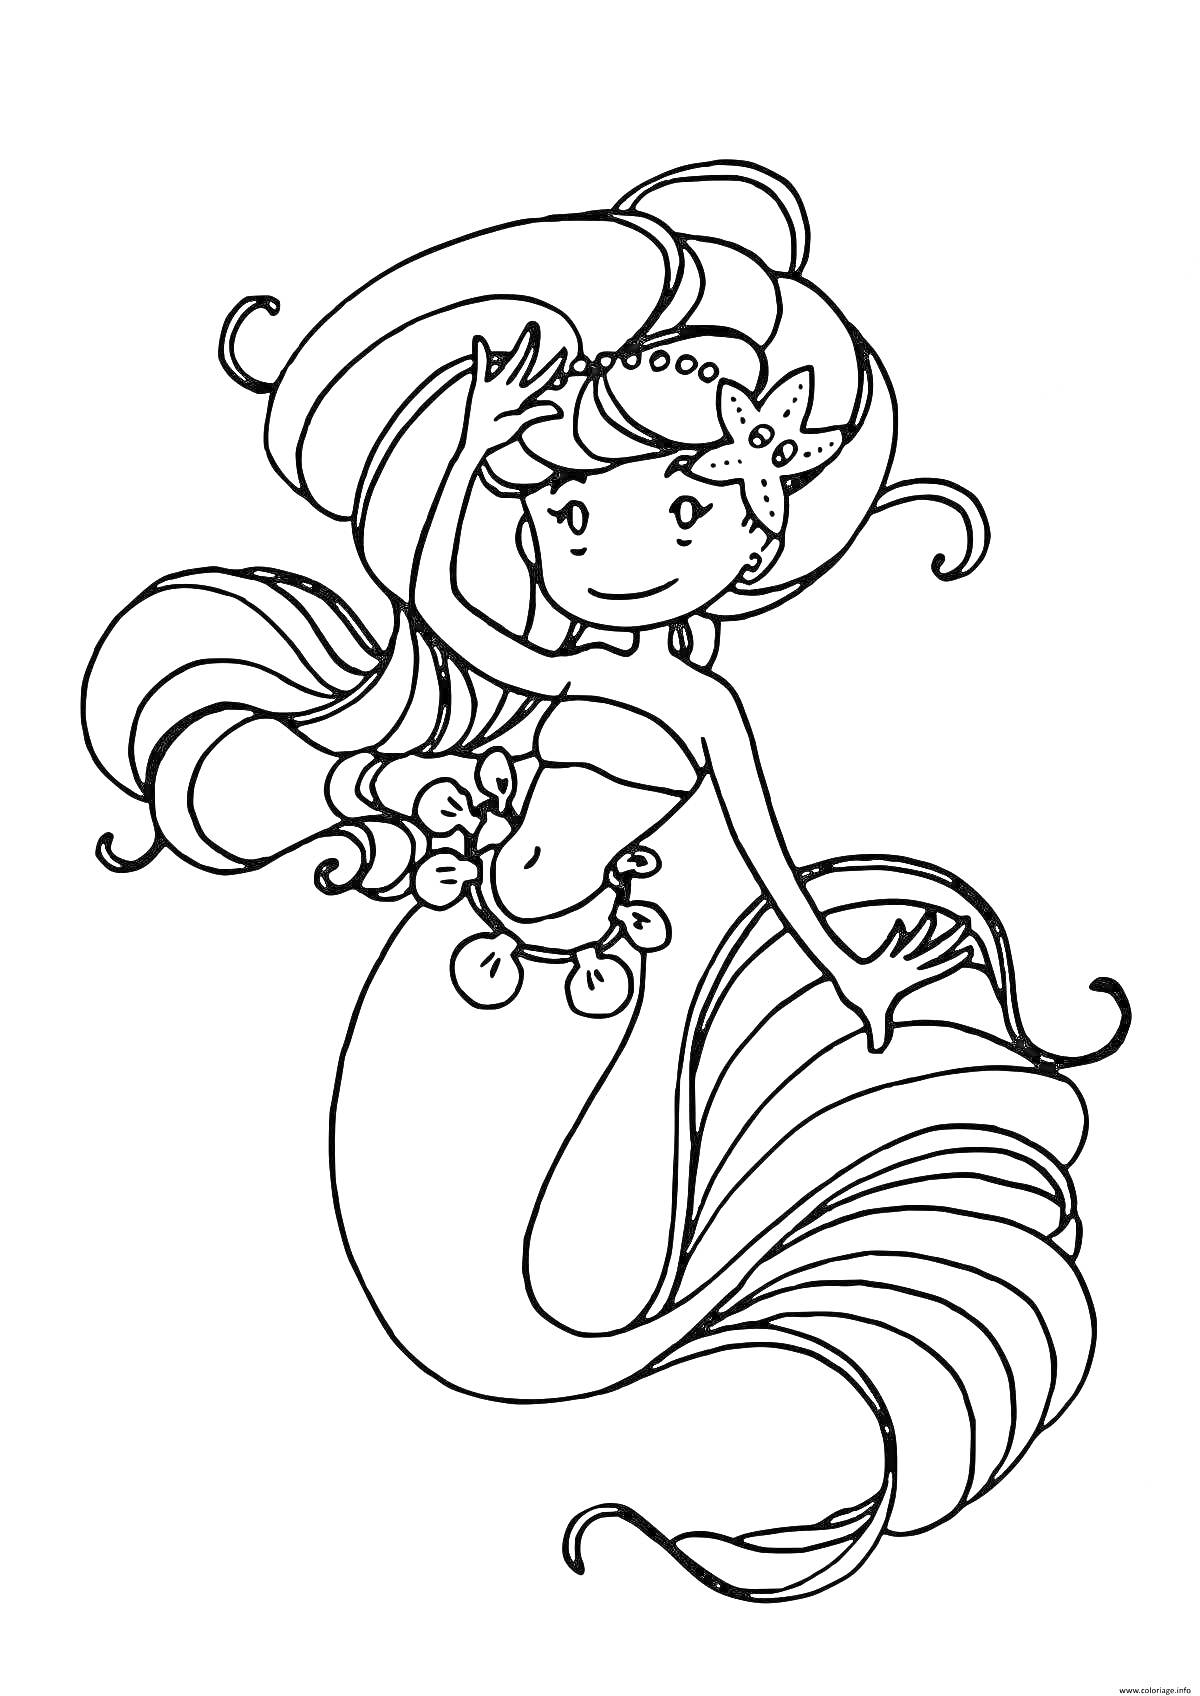 Раскраска Русалочка с длинными волосами и звездой на голове, в украшениях на талии